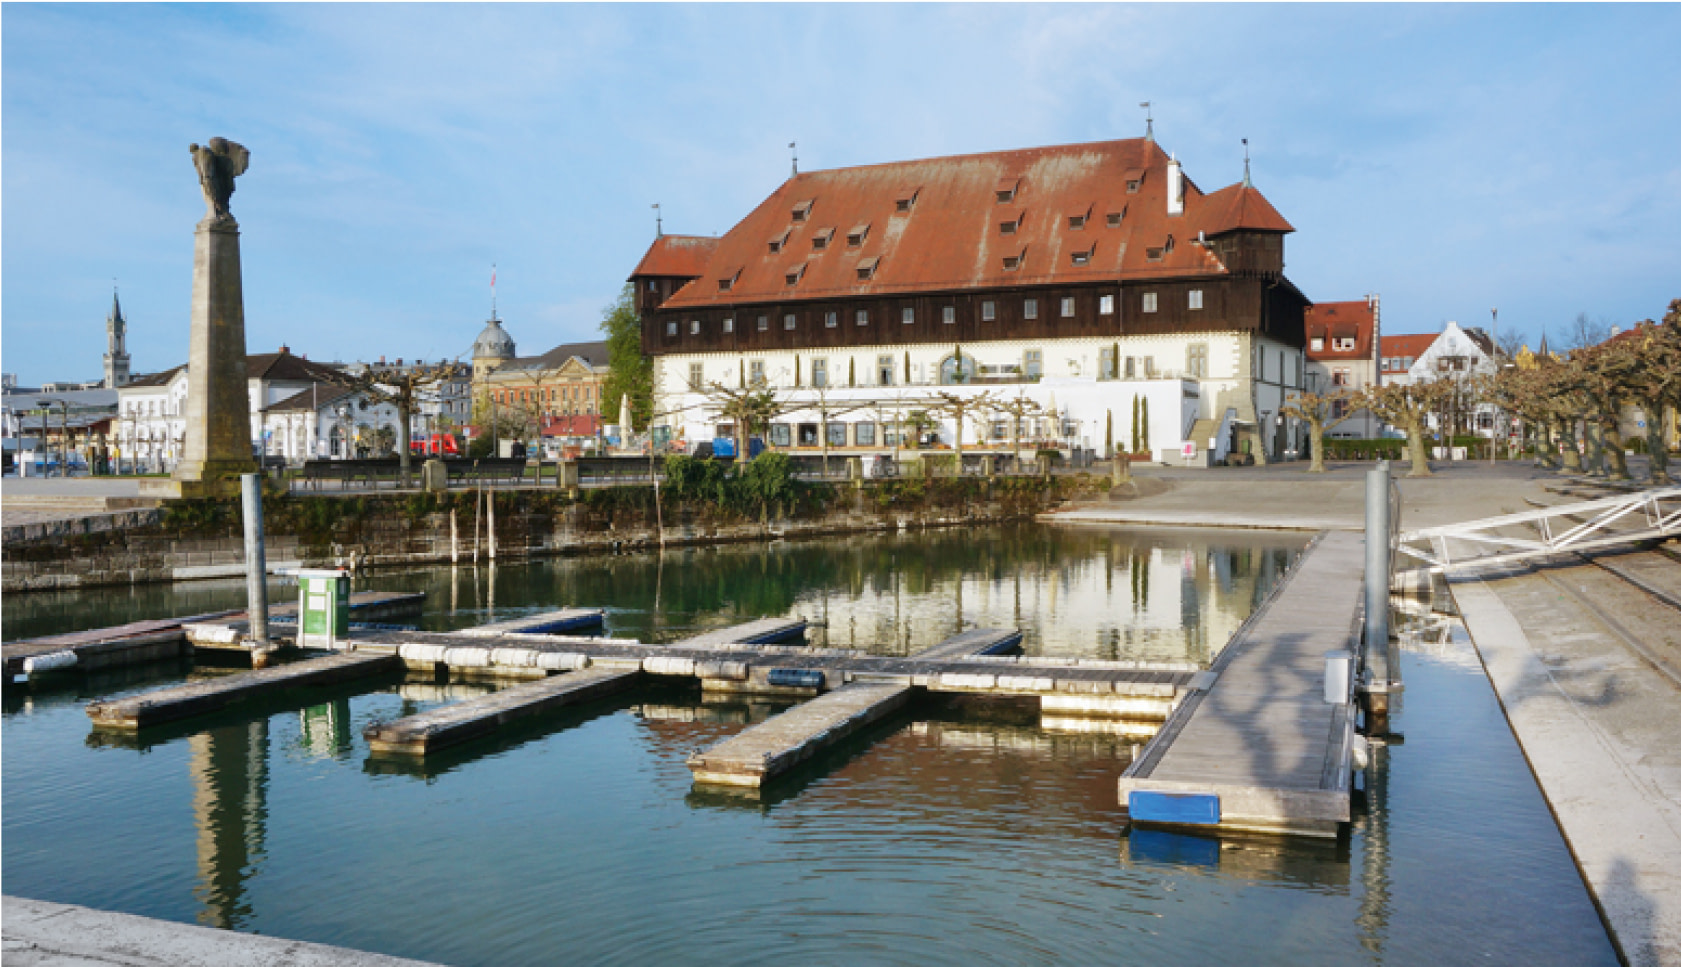 Das Konzilgebäude in Konstanz ist Start- und Endpunkt für den Rundgang durch die Altstadt von Konstanz